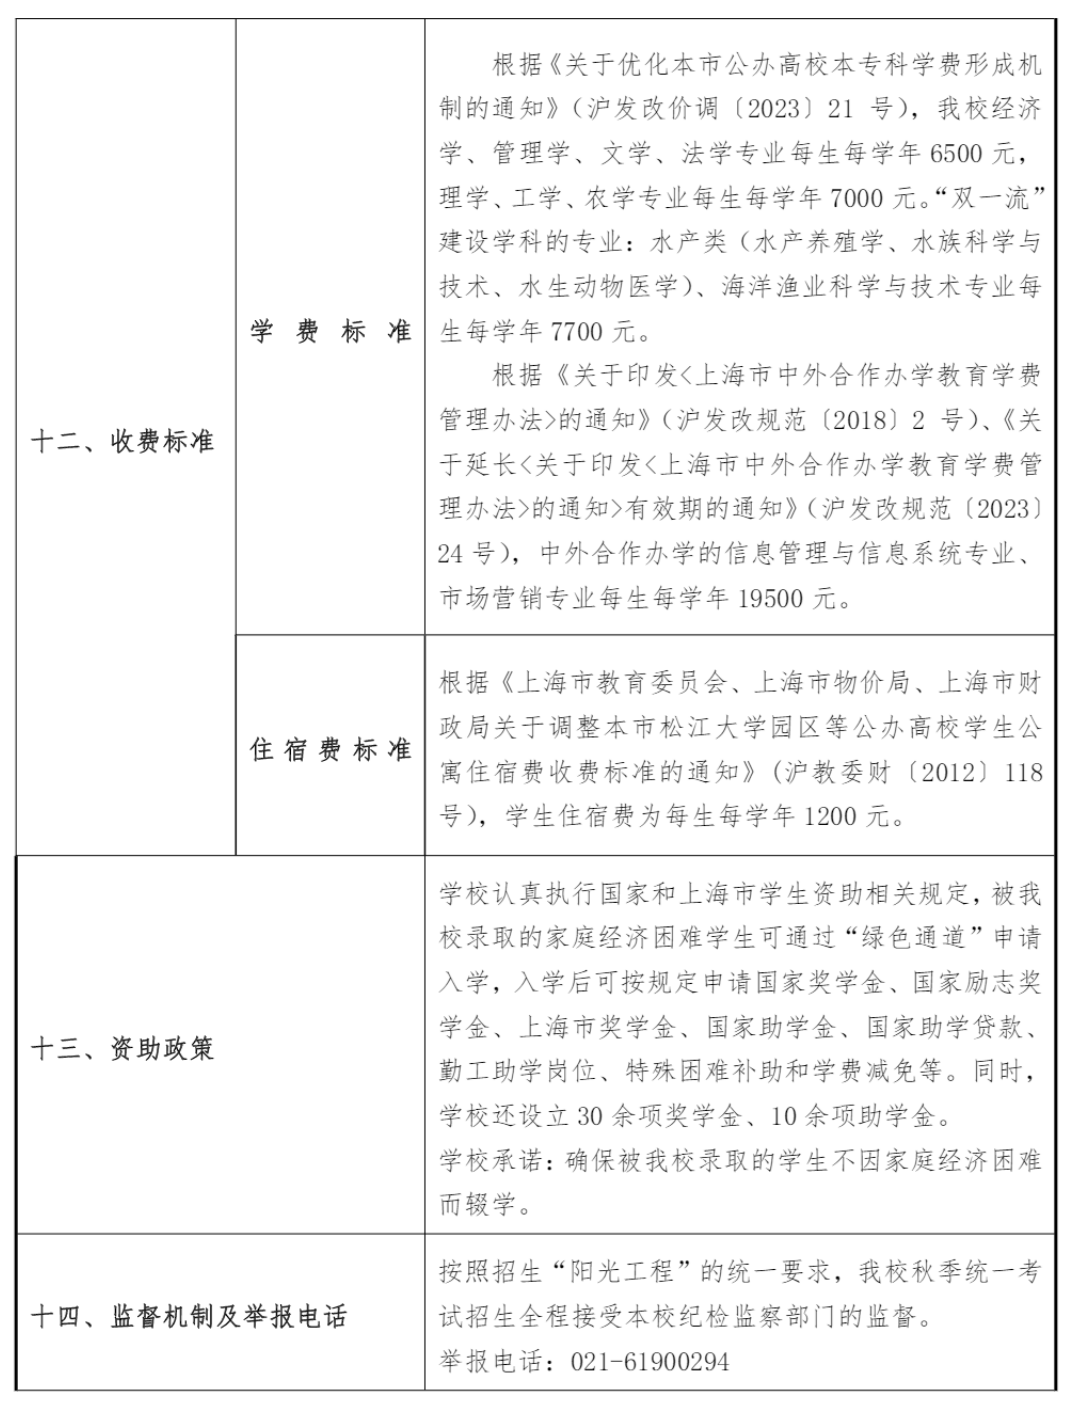 上海海洋大学－2023年奖 / 助学金政策